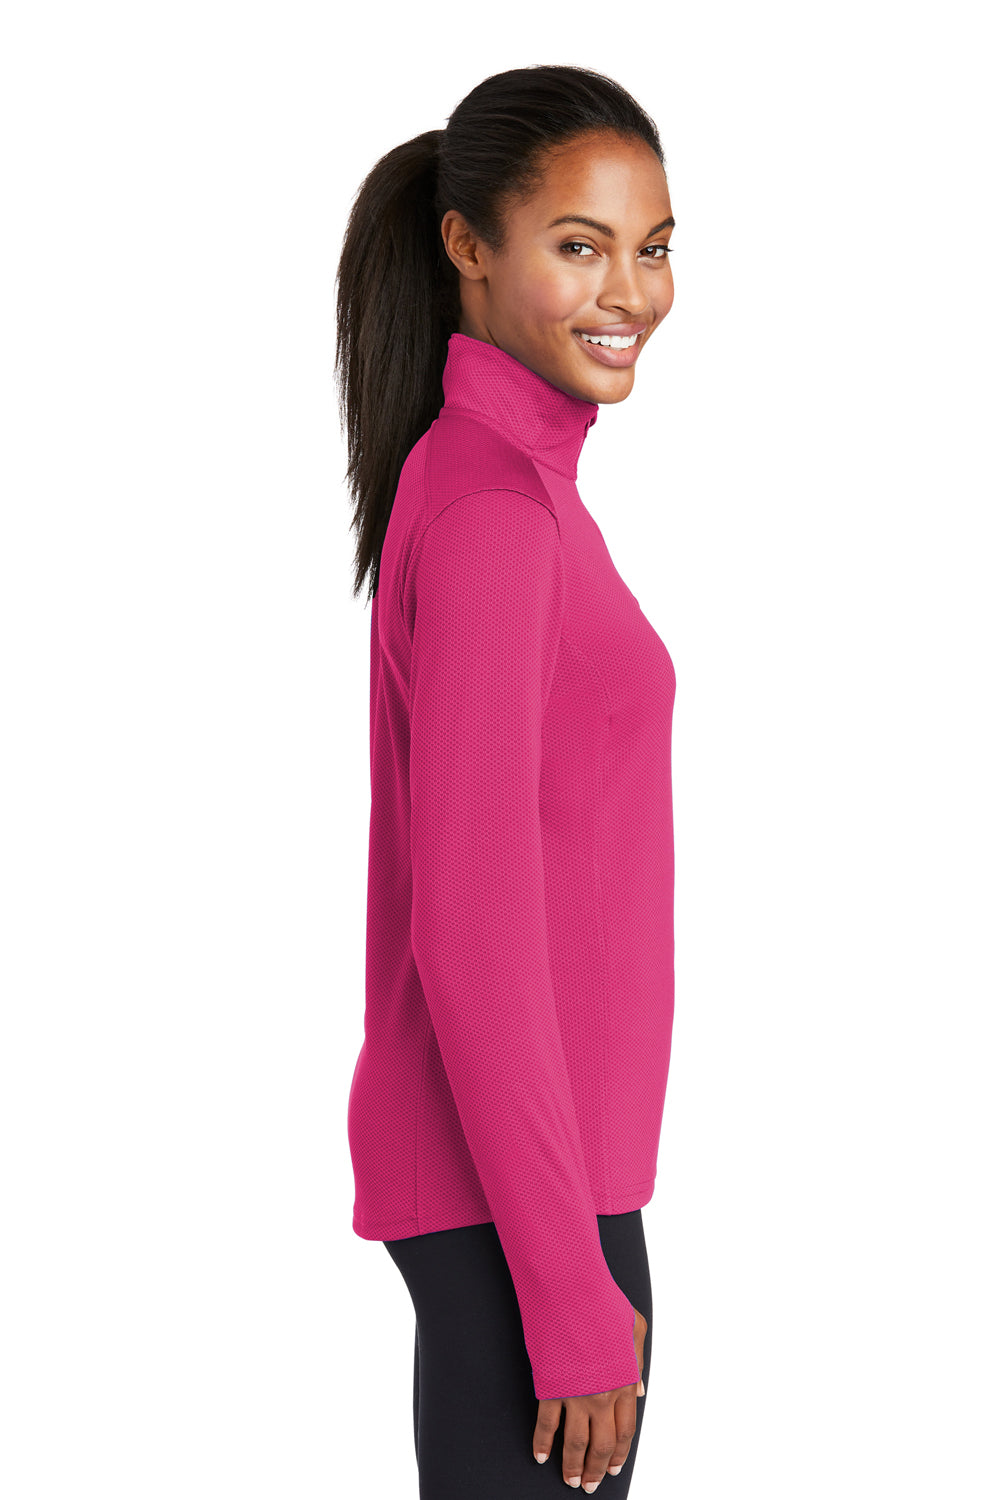 Sport-Tek LST860 Womens Sport-Wick Moisture Wicking 1/4 Zip Sweatshirt Fuchsia Pink Side